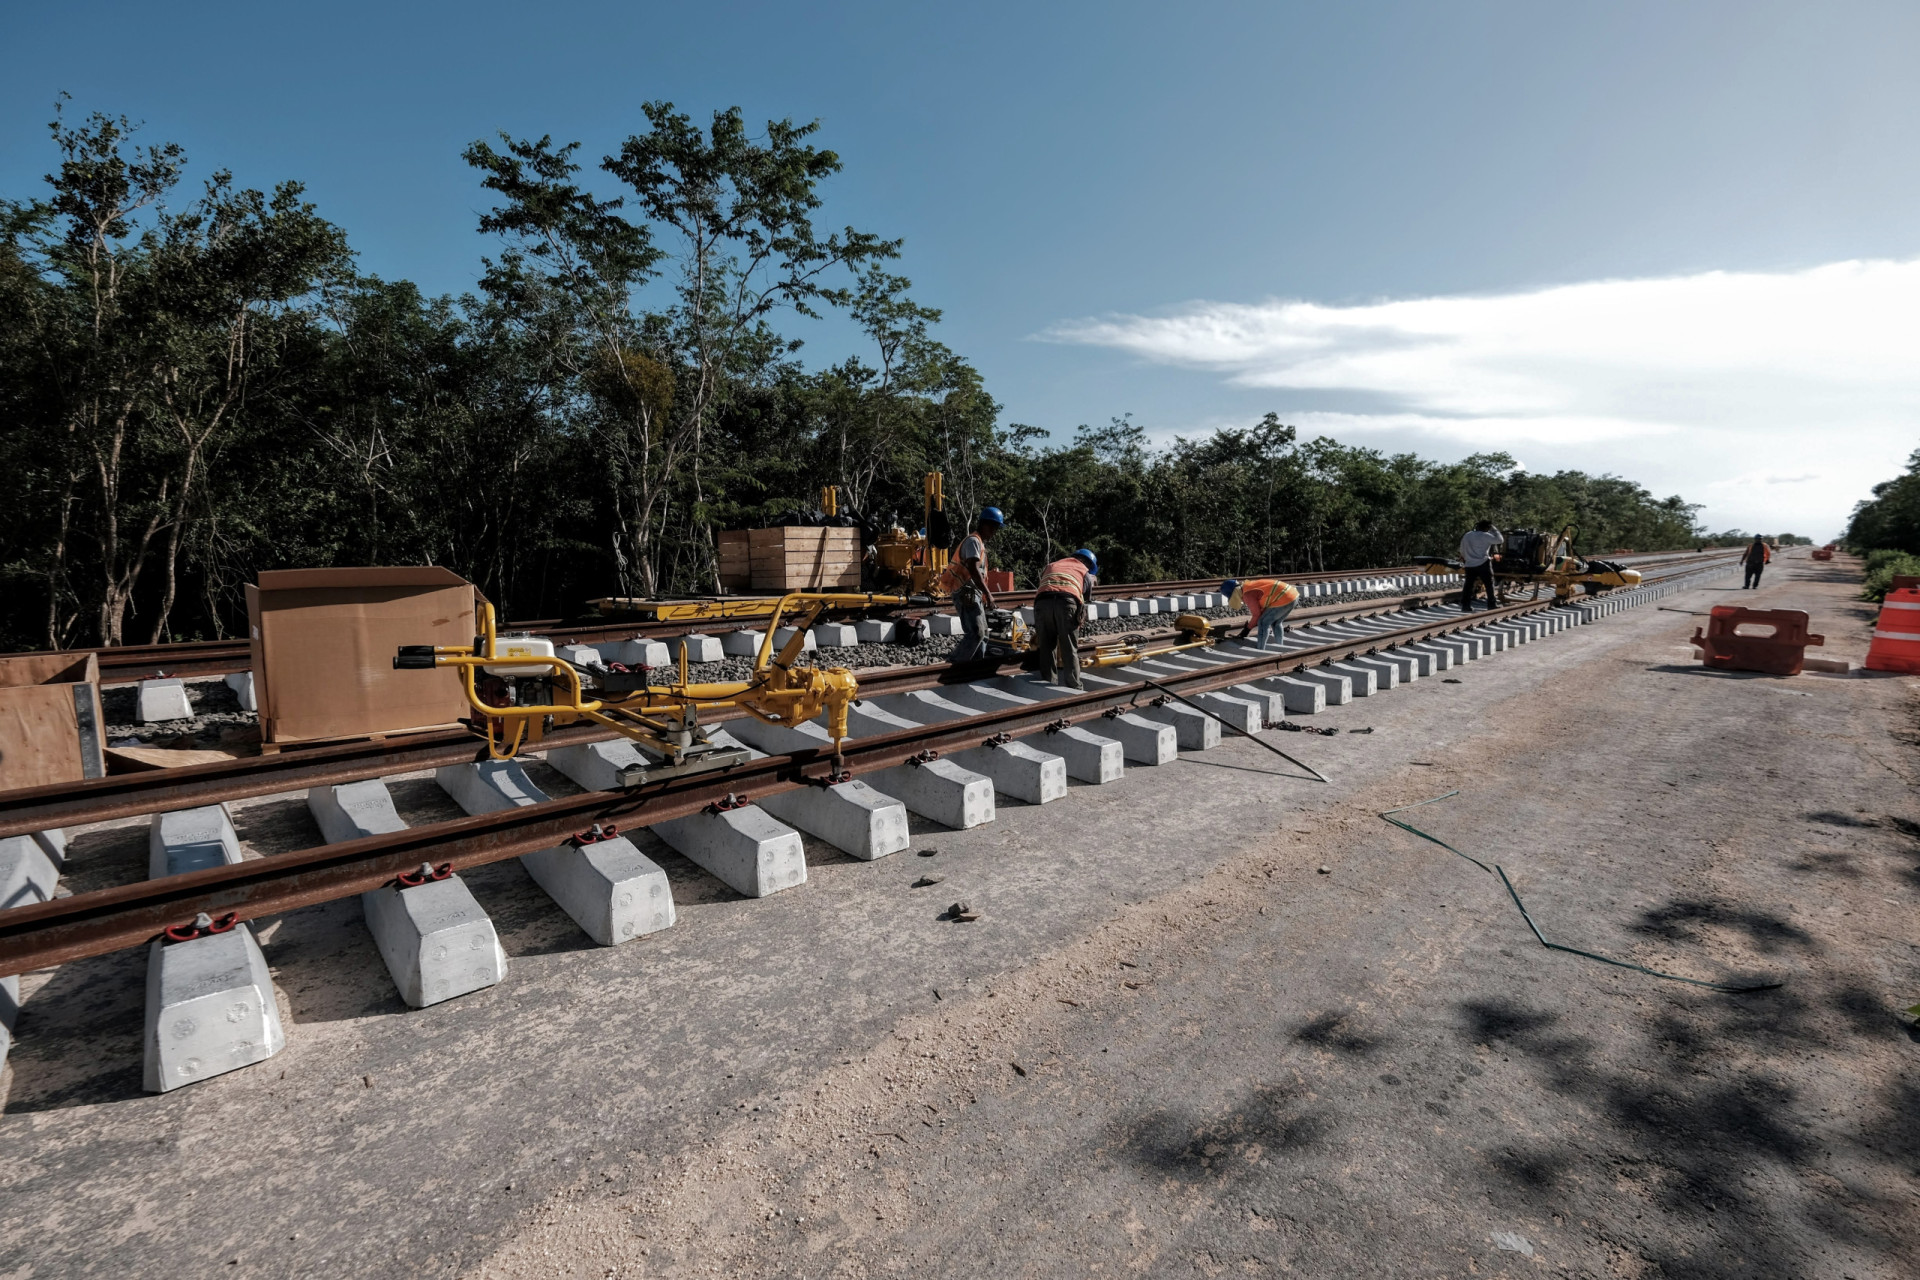 <p>Le Tren Maya ("Train Maya") devait coûter environ 20 milliards de dollars, mais certaines sources font état de chiffres beaucoup plus élevés. Le train traverse la péninsule du Yucatán, reliant les stations balnéaires aux sites mayas. Il a été partiellement inauguré en décembre 2023 et devrait être pleinement opérationnel à la mi-2024.</p><p><a href="https://www.msn.com/fr-fr/community/channel/vid-7xx8mnucu55yw63we9va2gwr7uihbxwc68fxqp25x6tg4ftibpra?cvid=94631541bc0f4f89bfd59158d696ad7e">Suivez-nous et accédez tous les jours à du contenu exclusif</a></p>